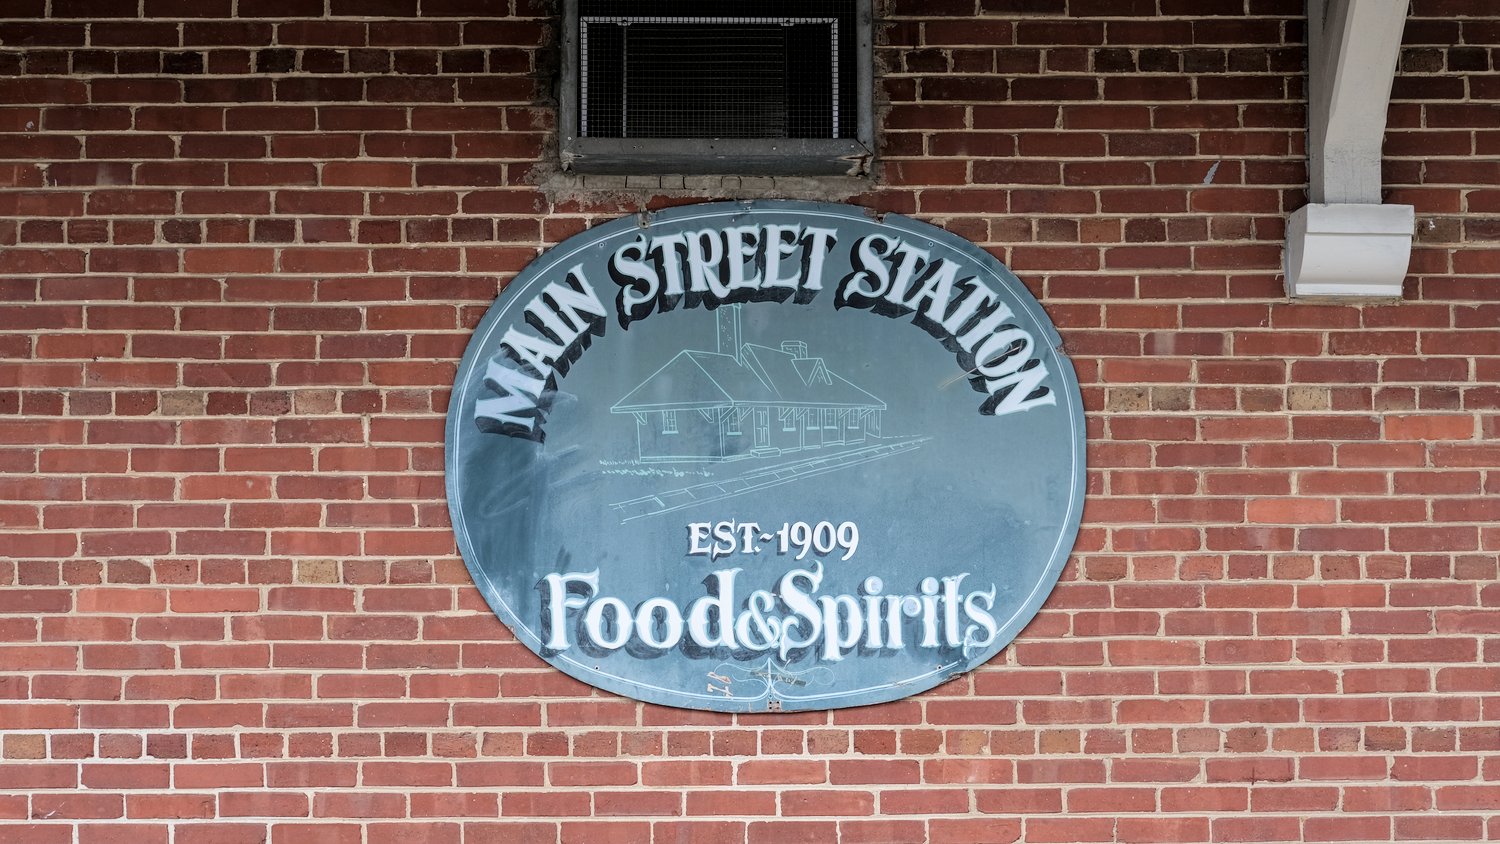 Main Street Station Food & Spirits, established 1909 signage.